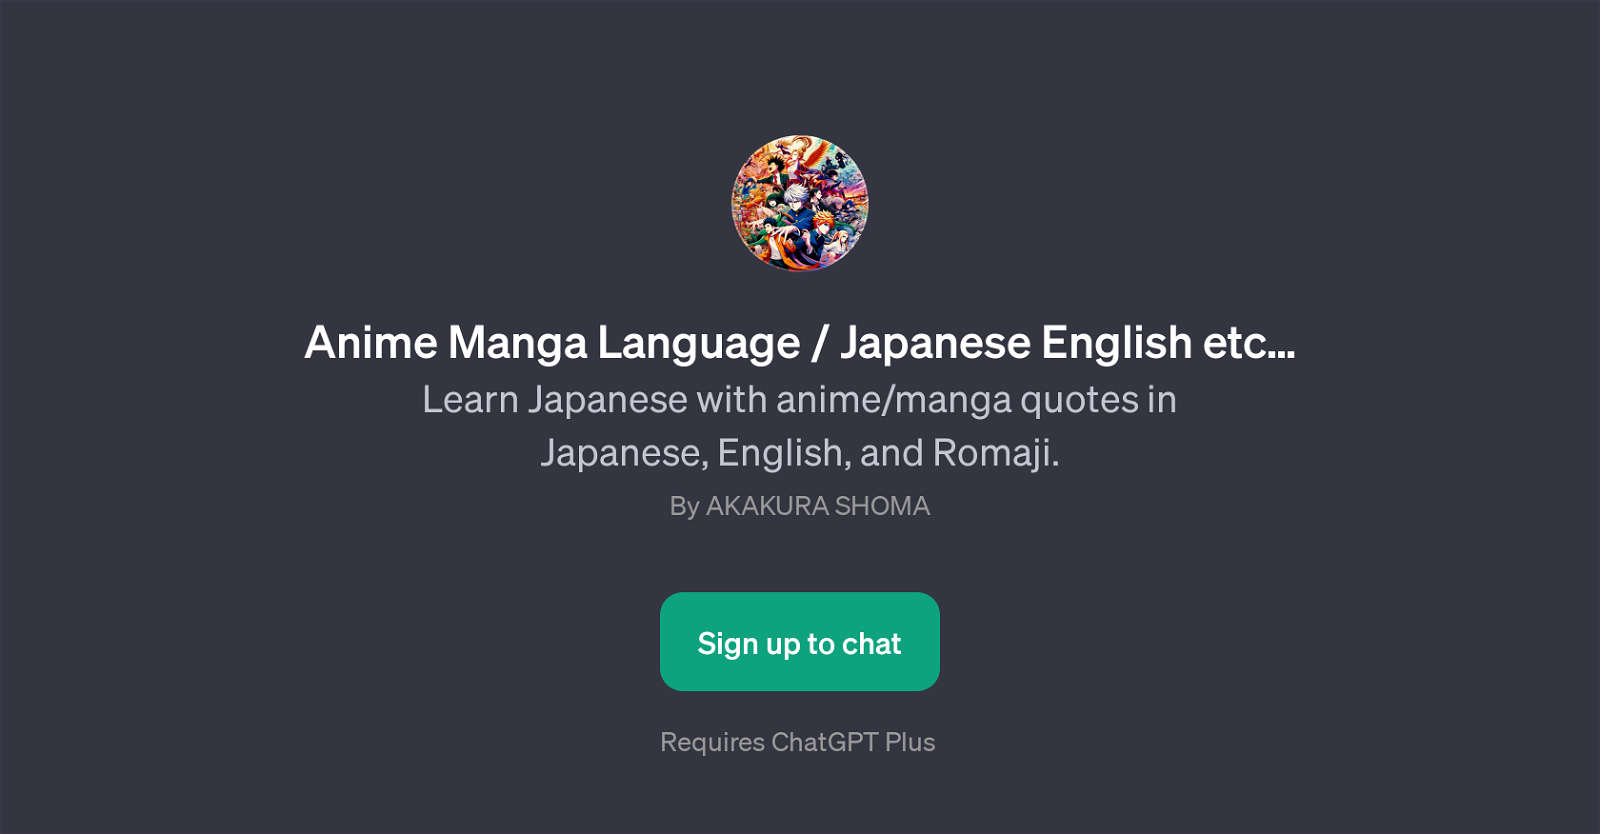 Anime Manga Language / Japanese English etc website